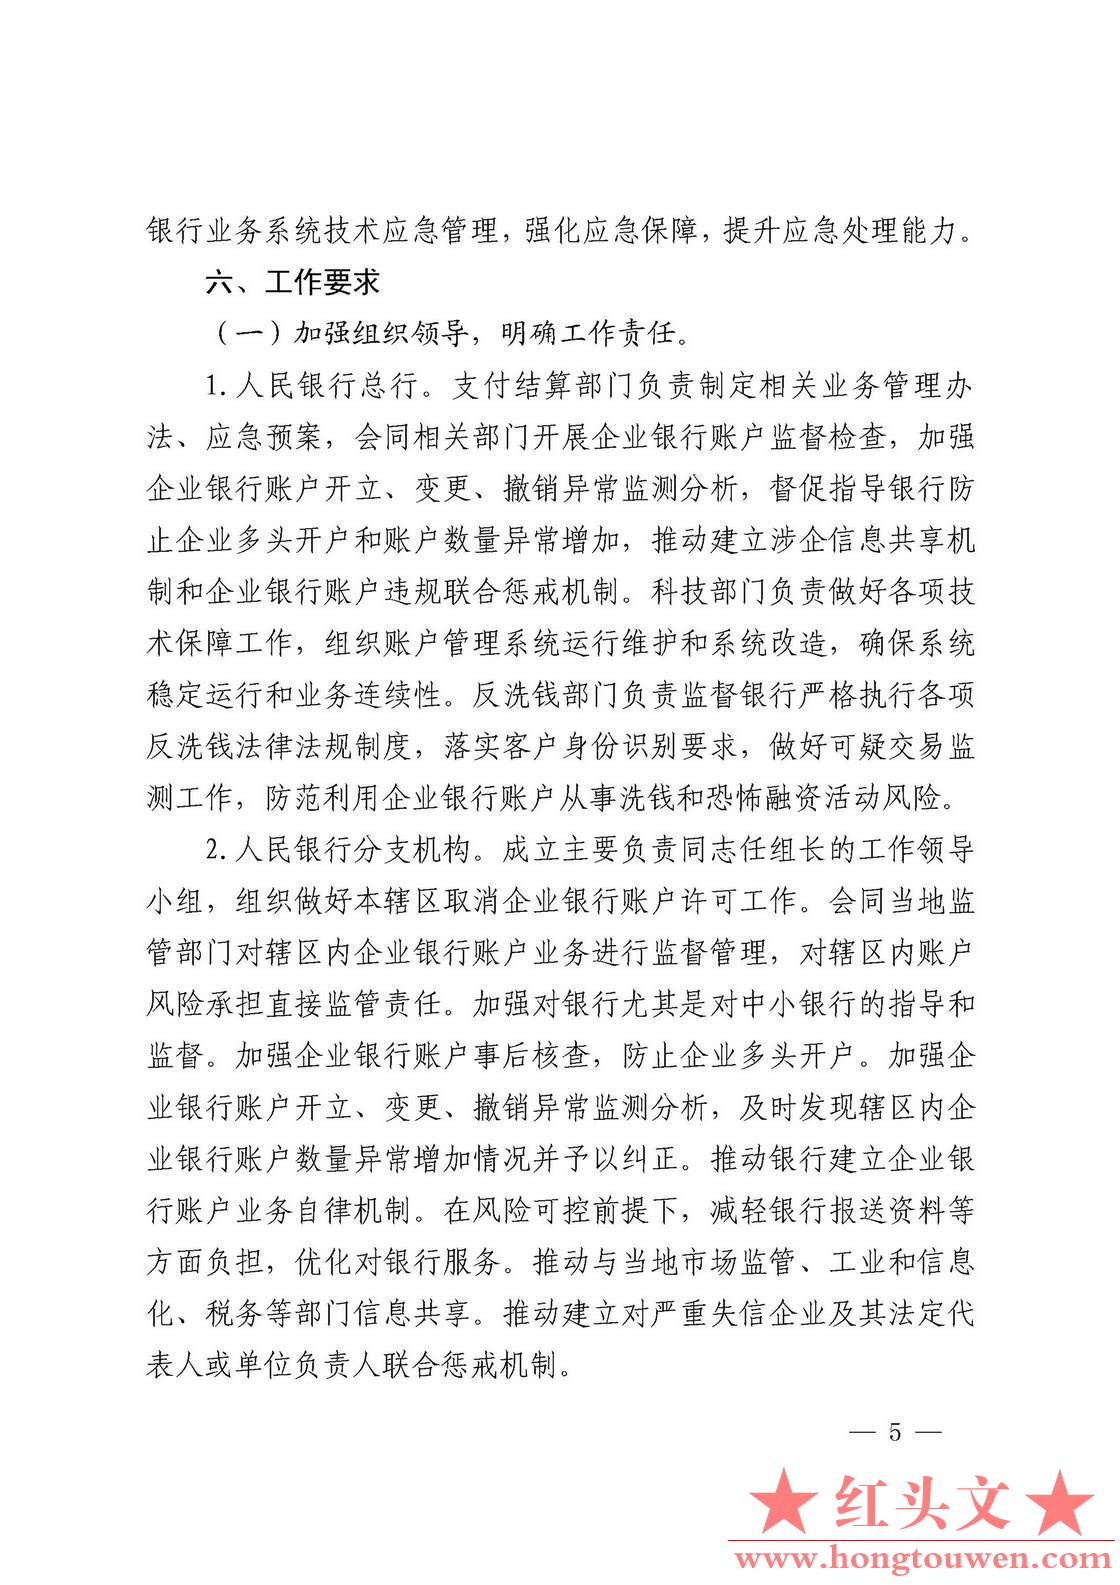 银发[2019]41号-中国人民银行关于取消企业银行账户许可的通知_页面_05.jpg.jpg